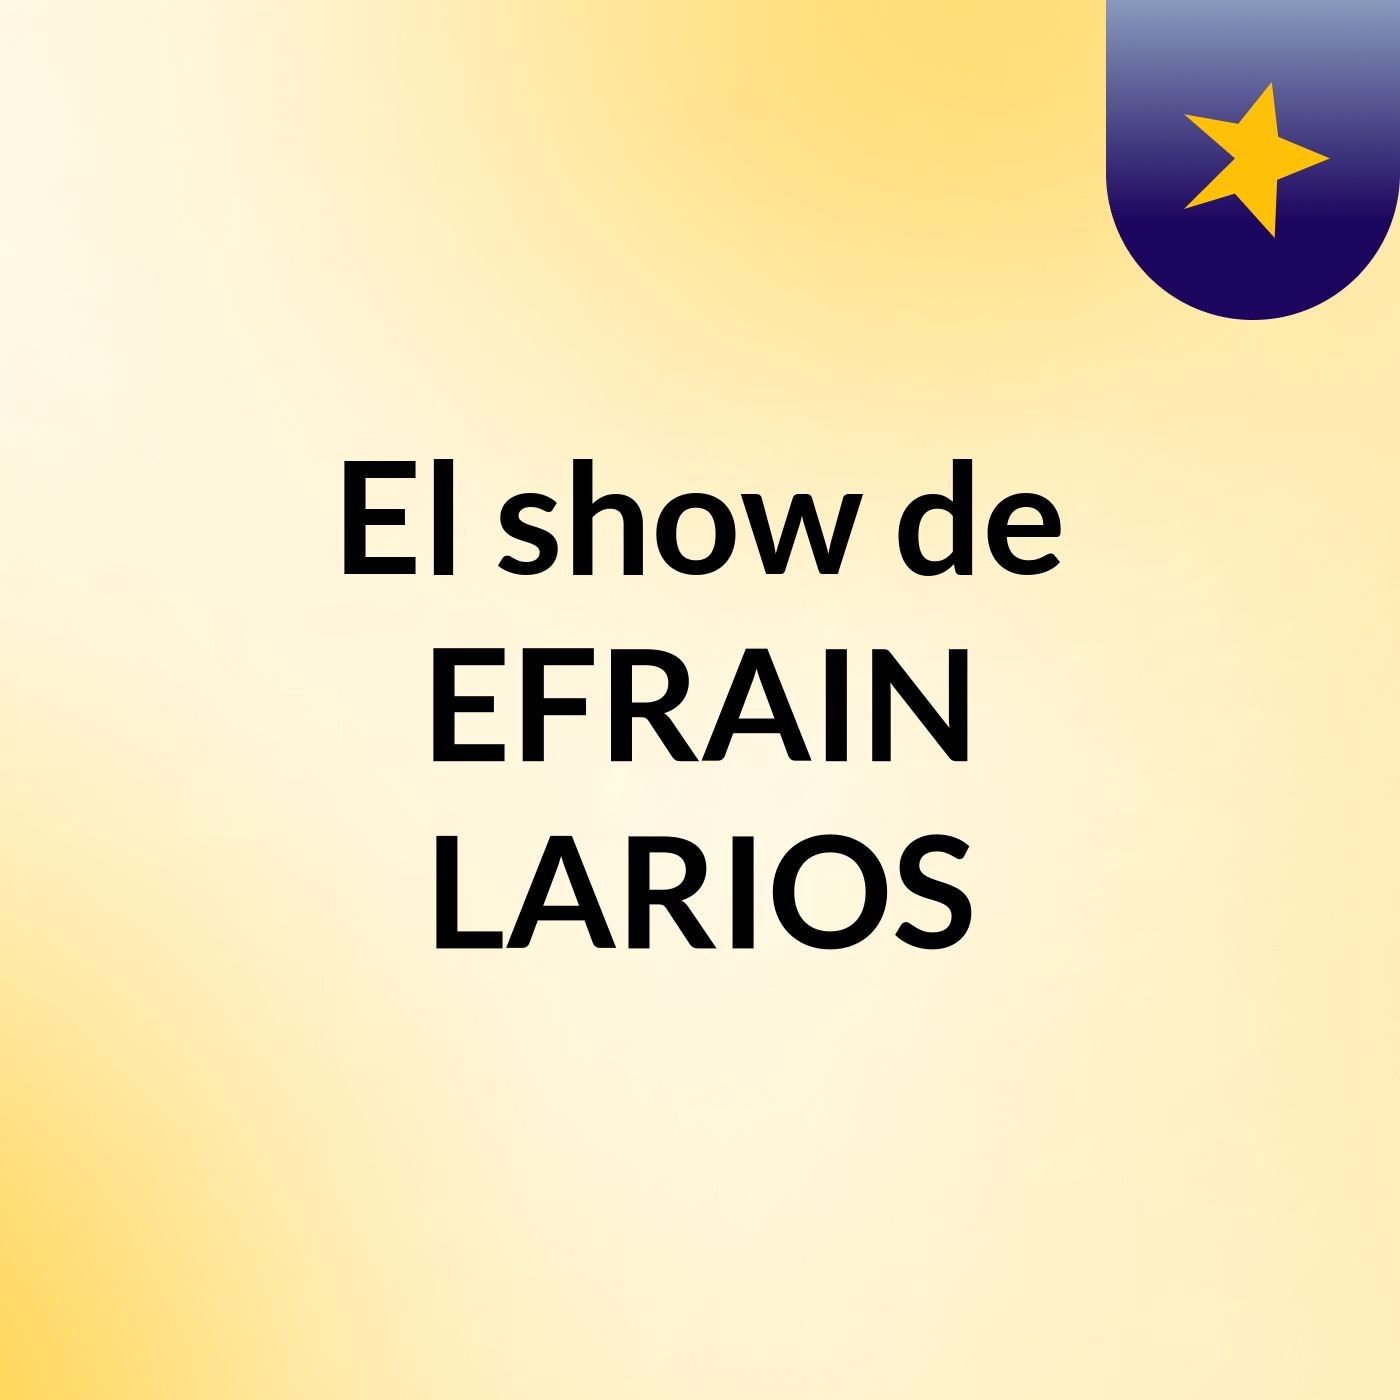 El show de EFRAIN LARIOS